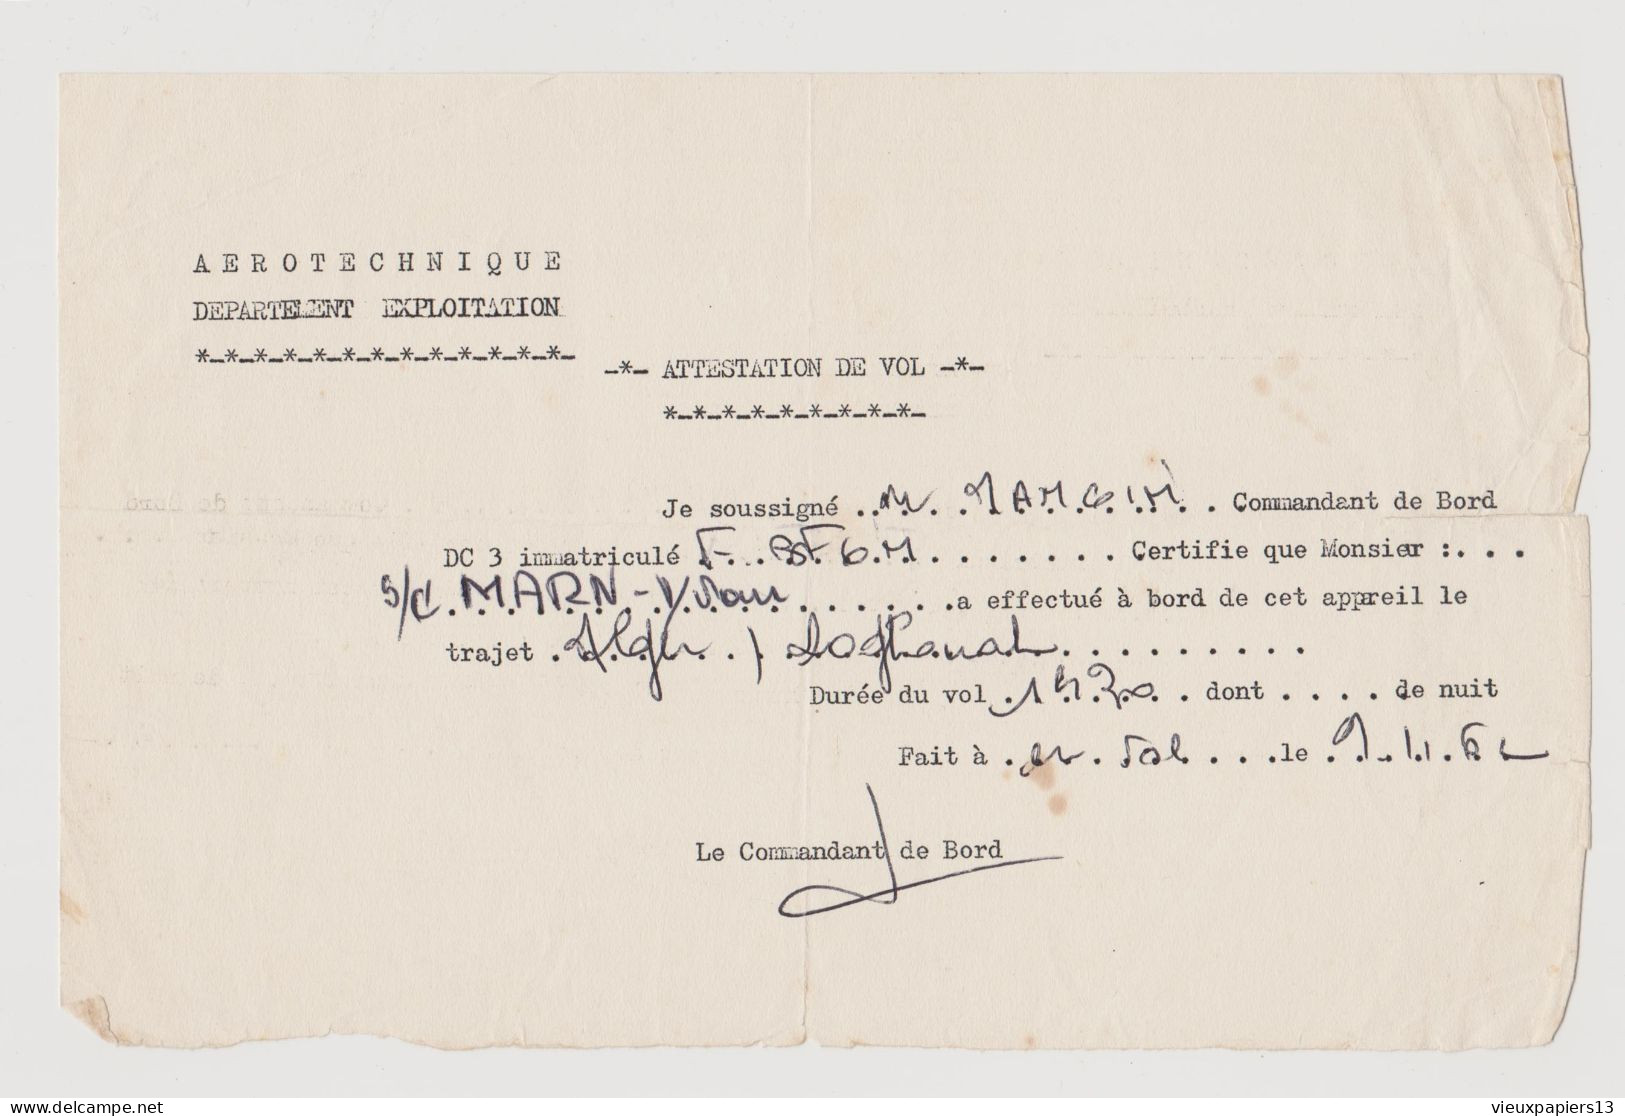 Guerre D'Algérie 1962 Attestation De Vol DC3 Commandant De Bord Mangin - Pour Sergent Chef Trajet Alger Laghouat - Documents